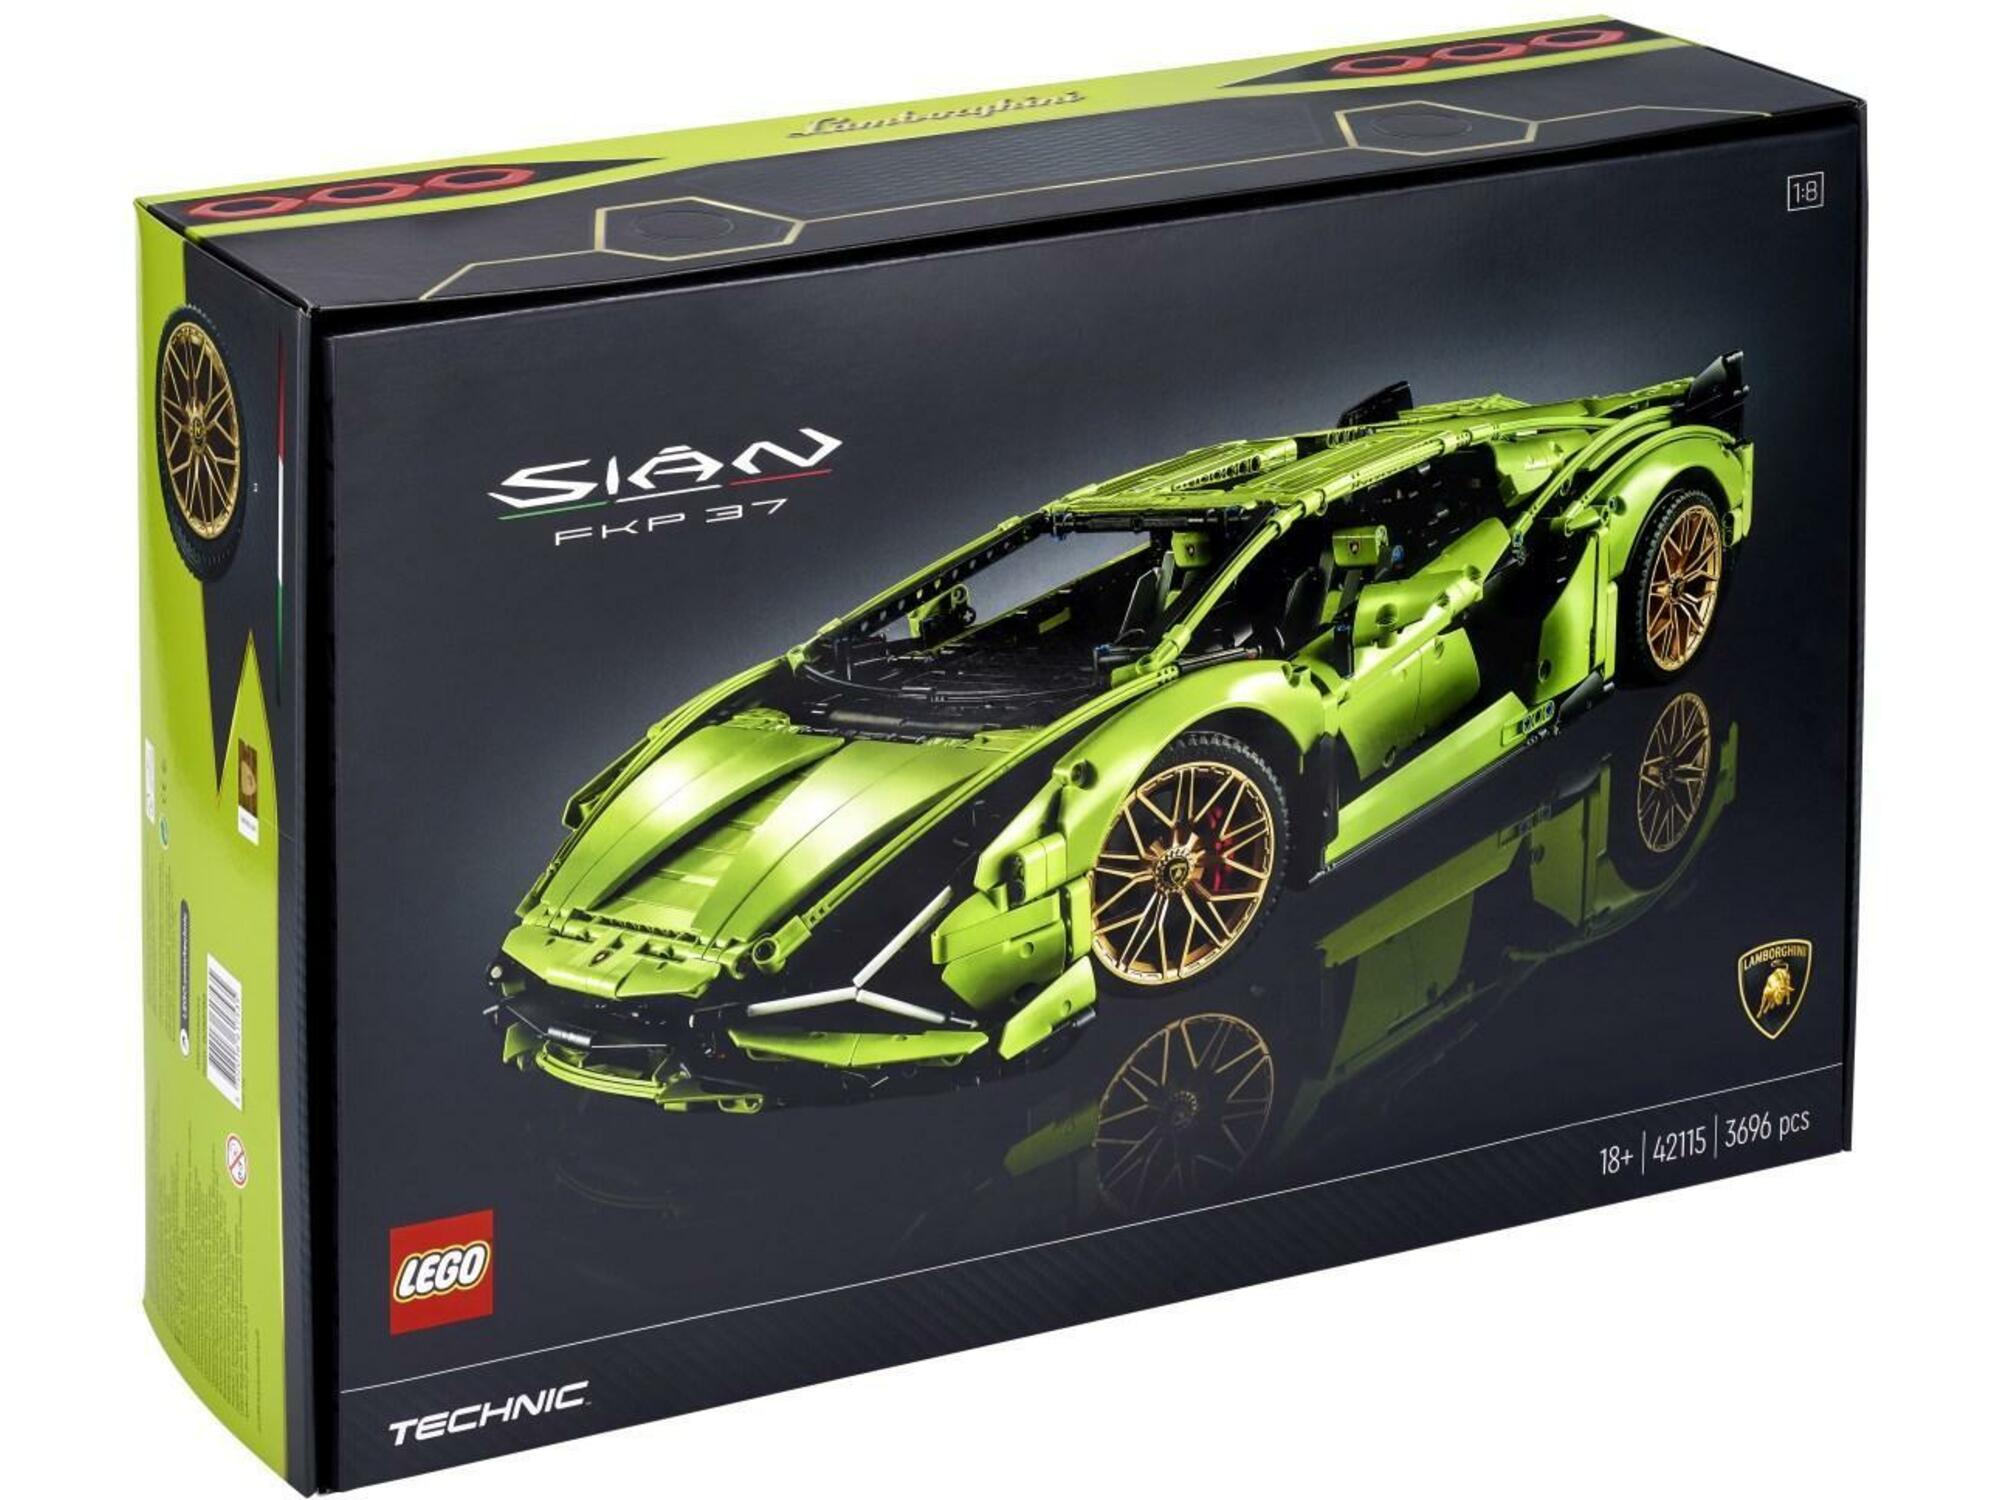 LEGO TECHNIC športni avtomobil Lamborghini Sian FKP 37 42115